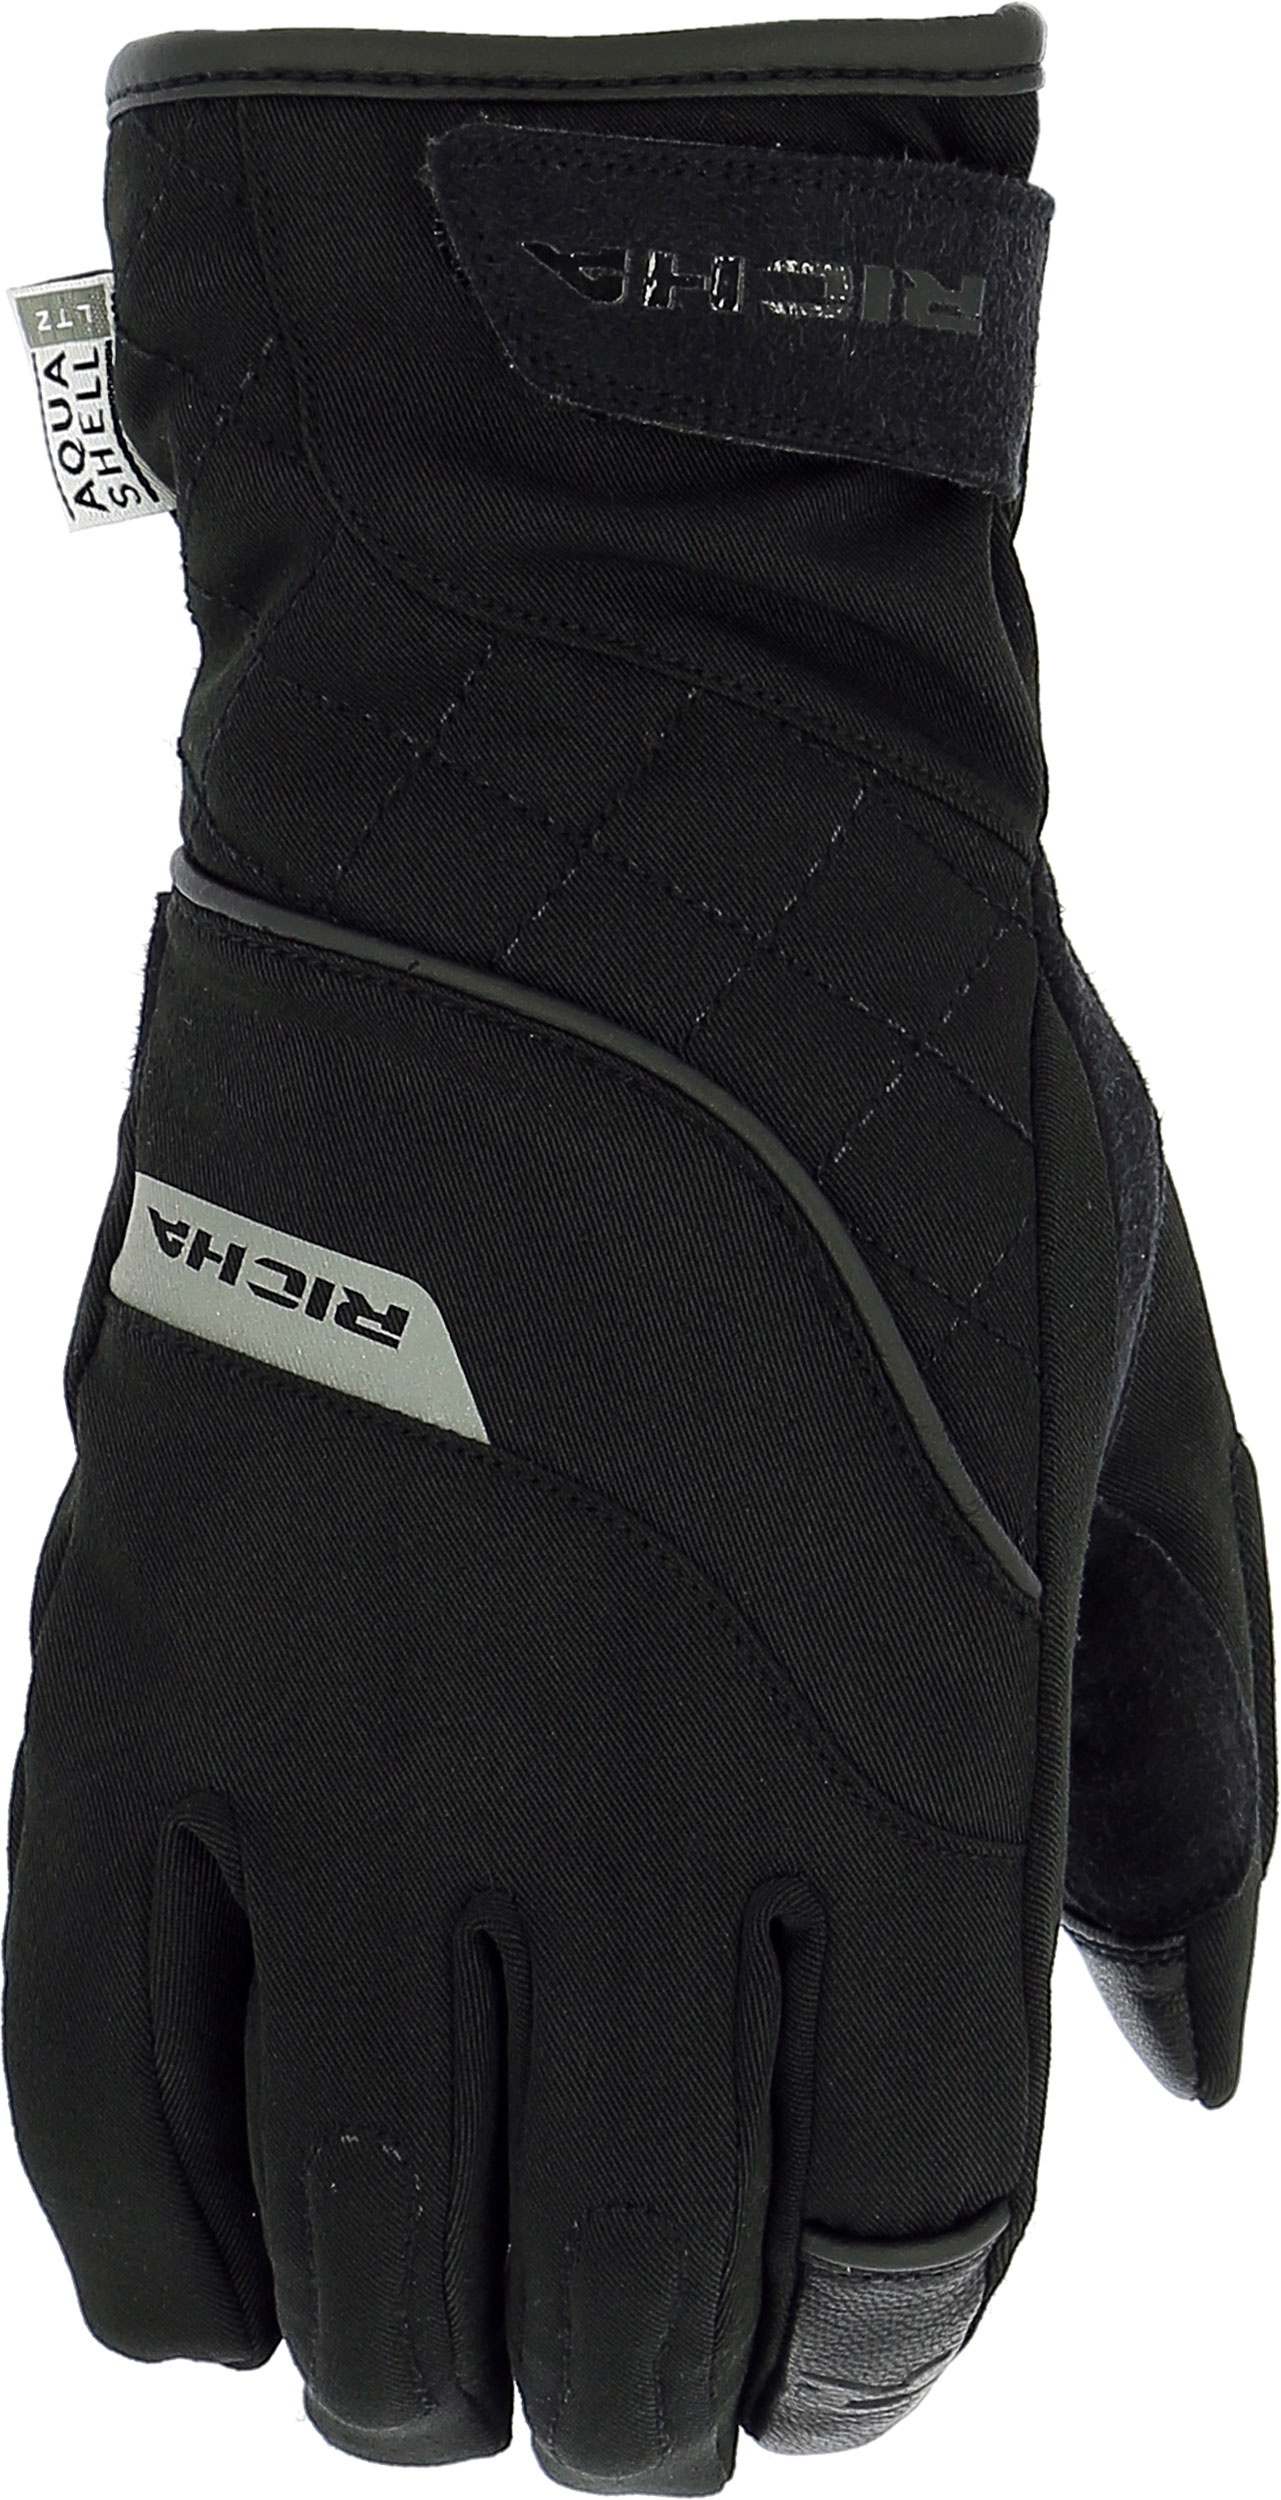 Richa Tina 2, gants imperméables femmes - Noir - 2XL